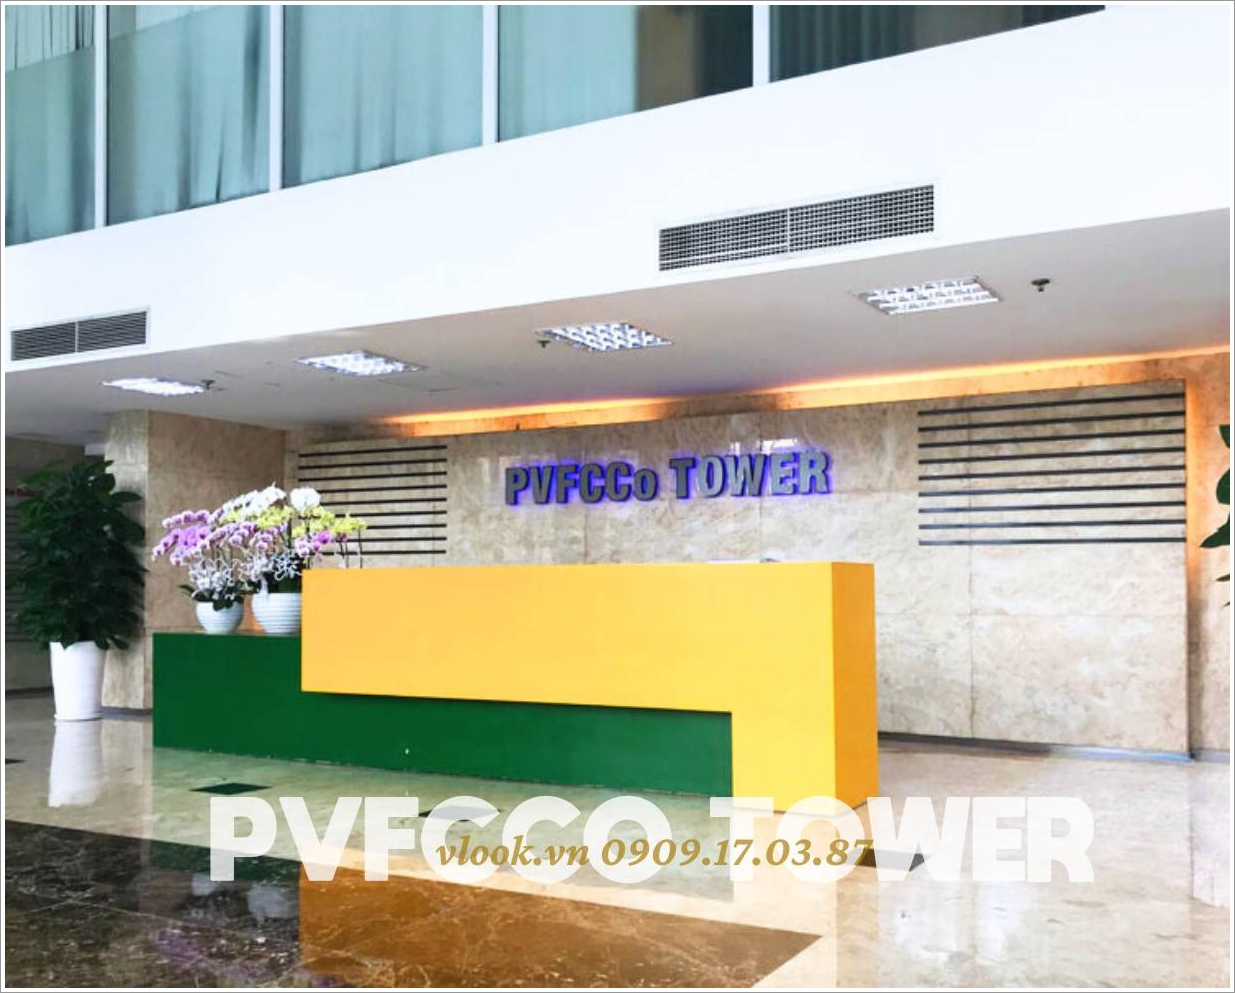 Cao ốc cho thuê văn phòng PVFCCo Tower, Mạc Đĩnh Chi, Quận 1 - Văn phòng cho thuê TP.HCM - vlook.vn